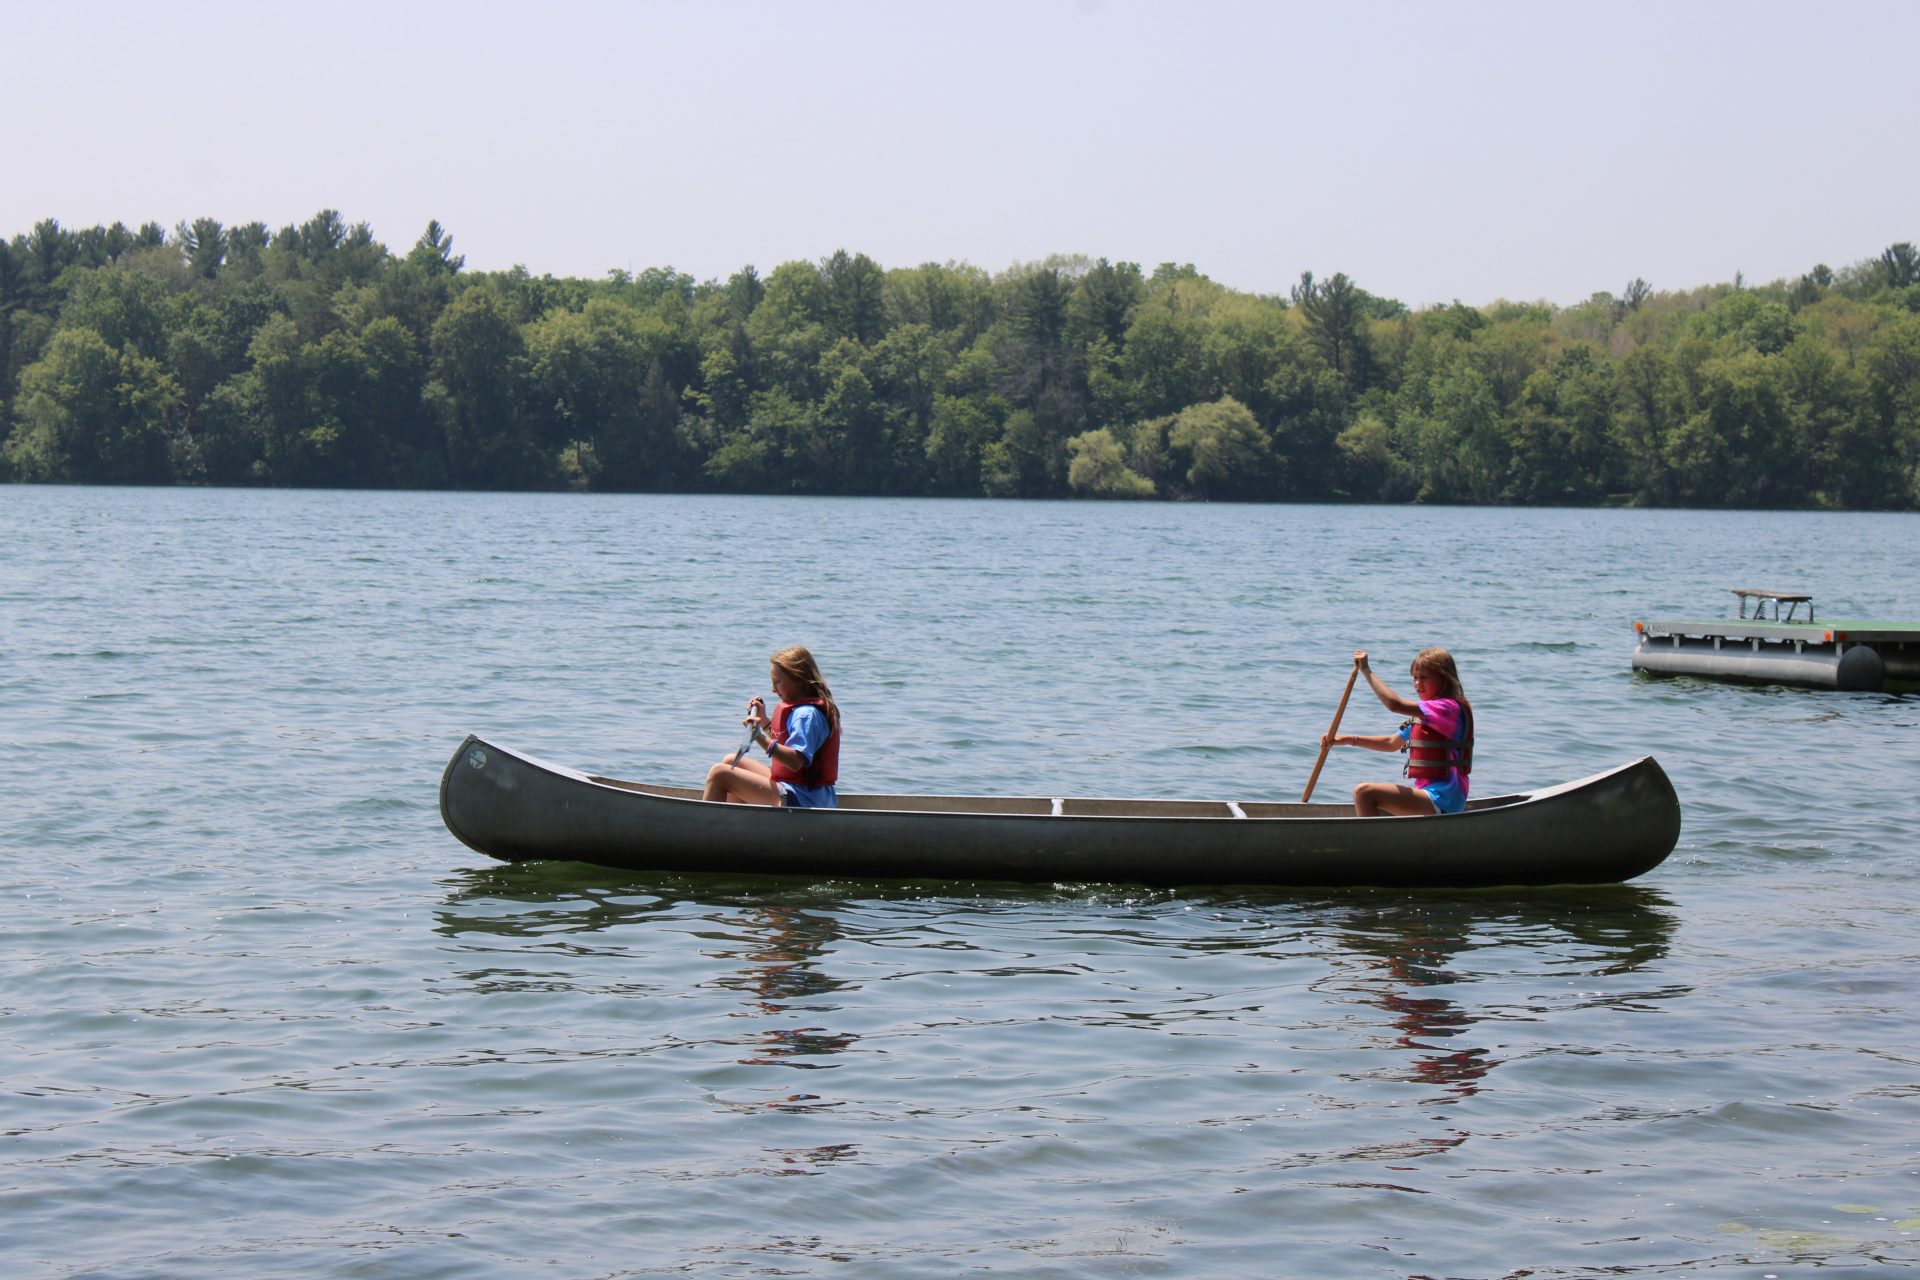  two girls kayaking across a lake 